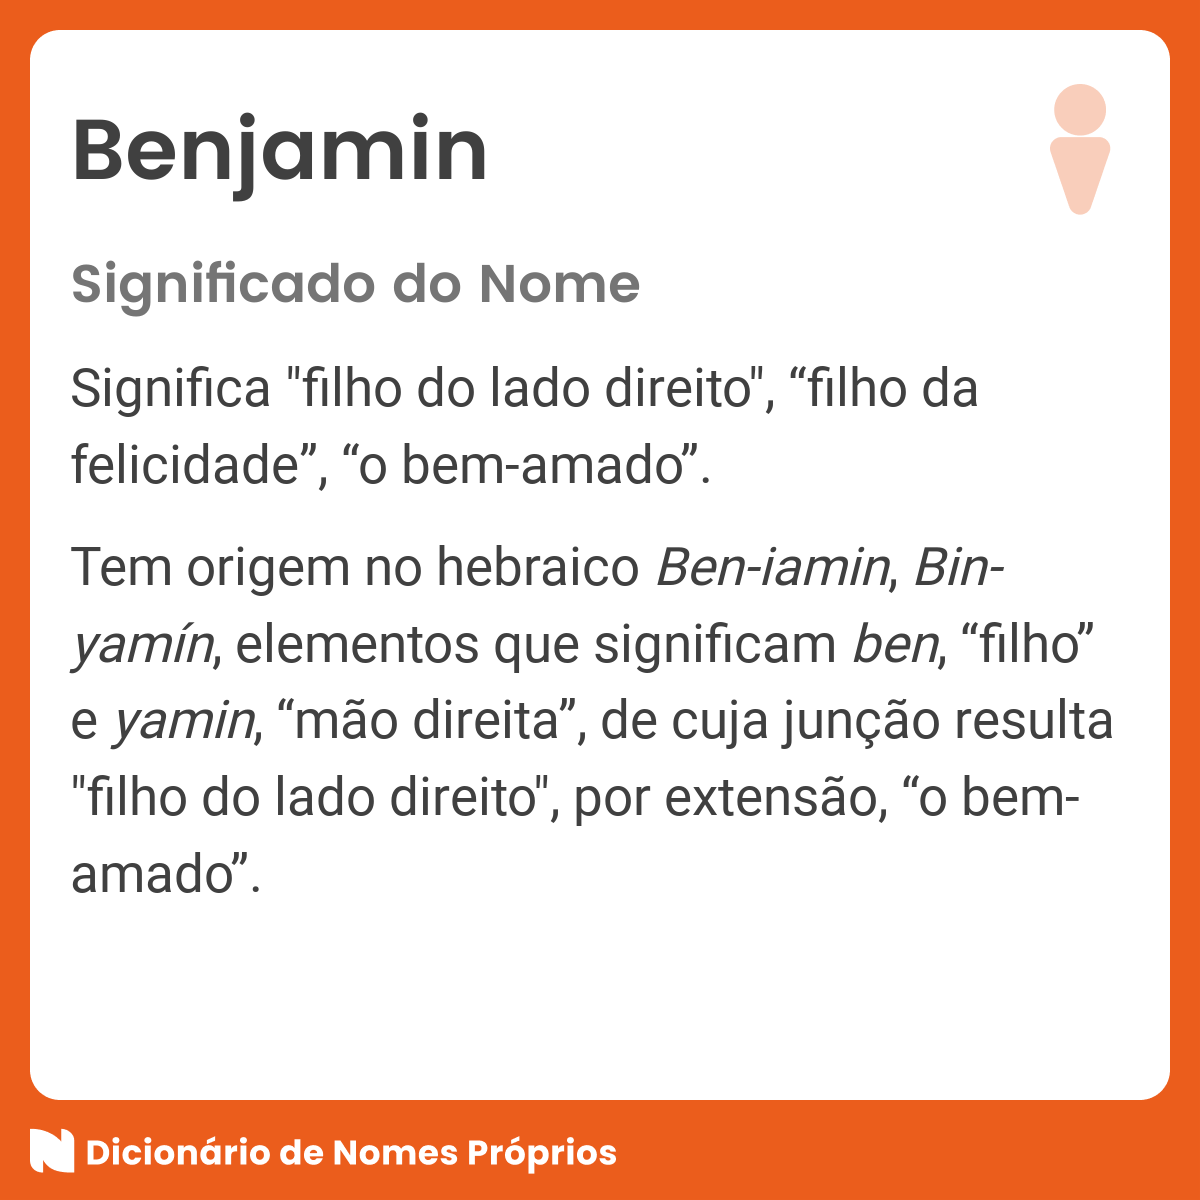 Significado do nome Benjamin - Dicionário de Nomes Próprios